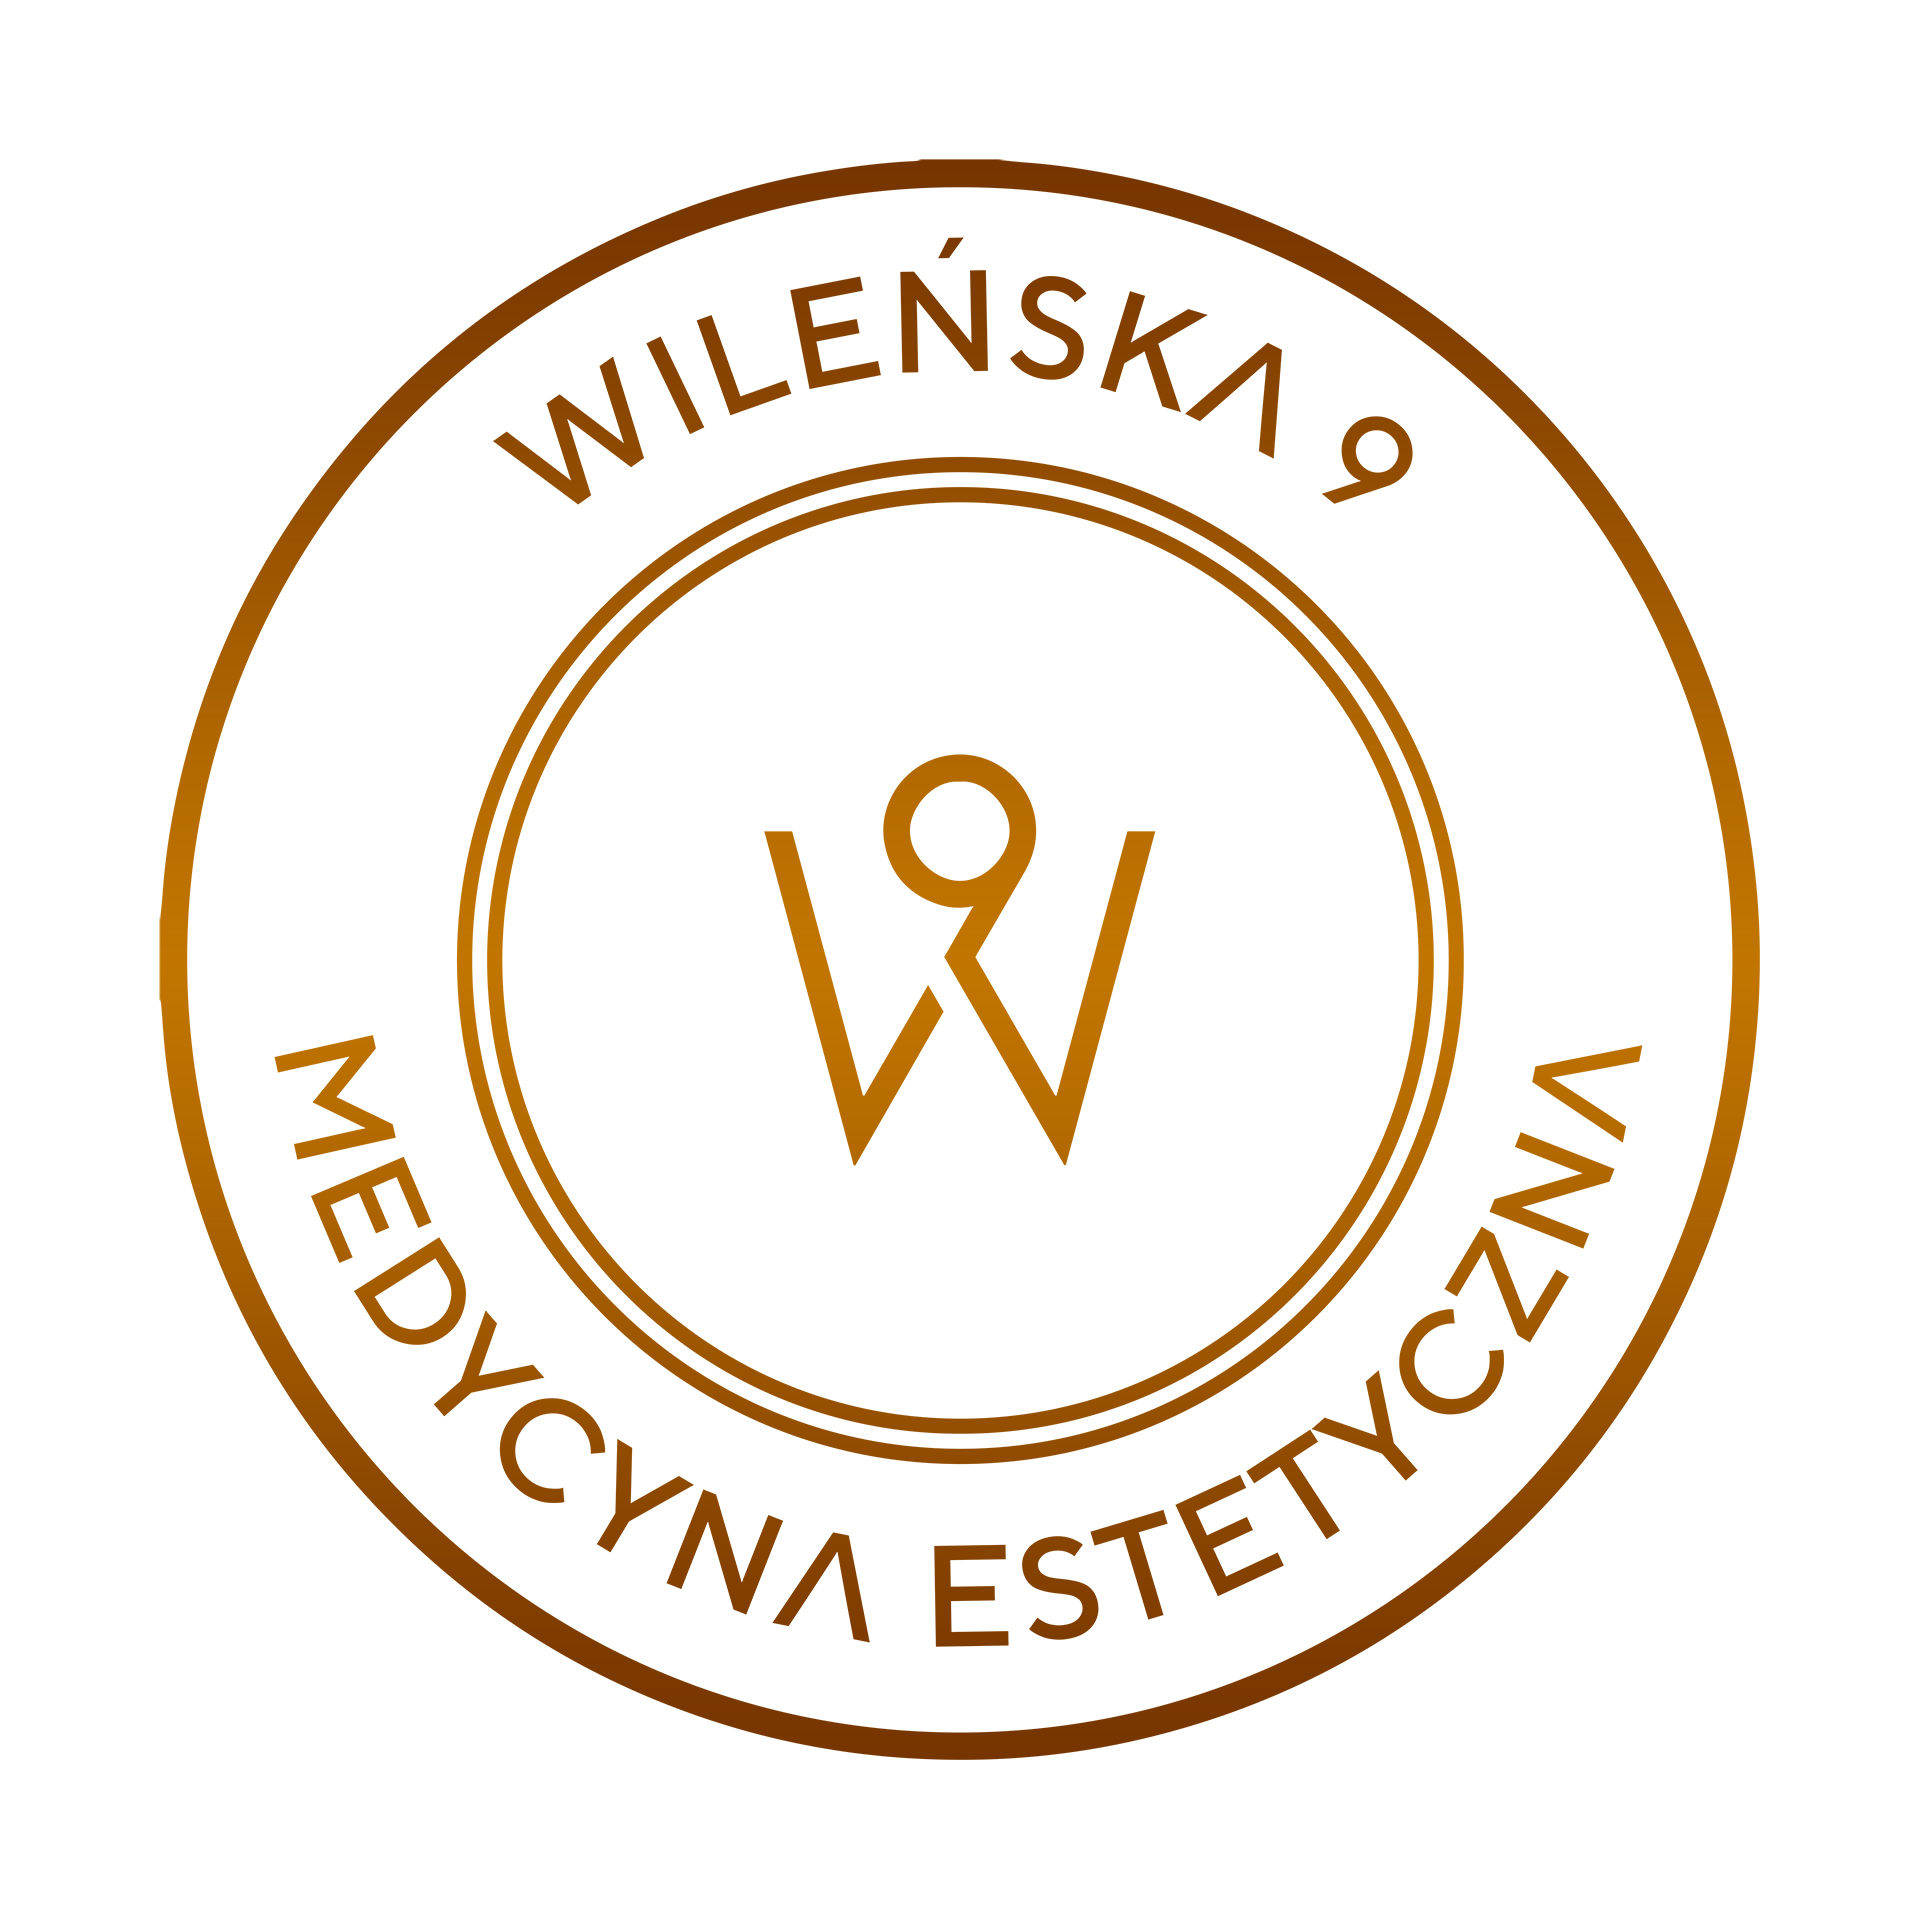 Wileńska 9 Medycyna Estetyczna, Wileńska 9/1, 85-013, Bydgoszcz